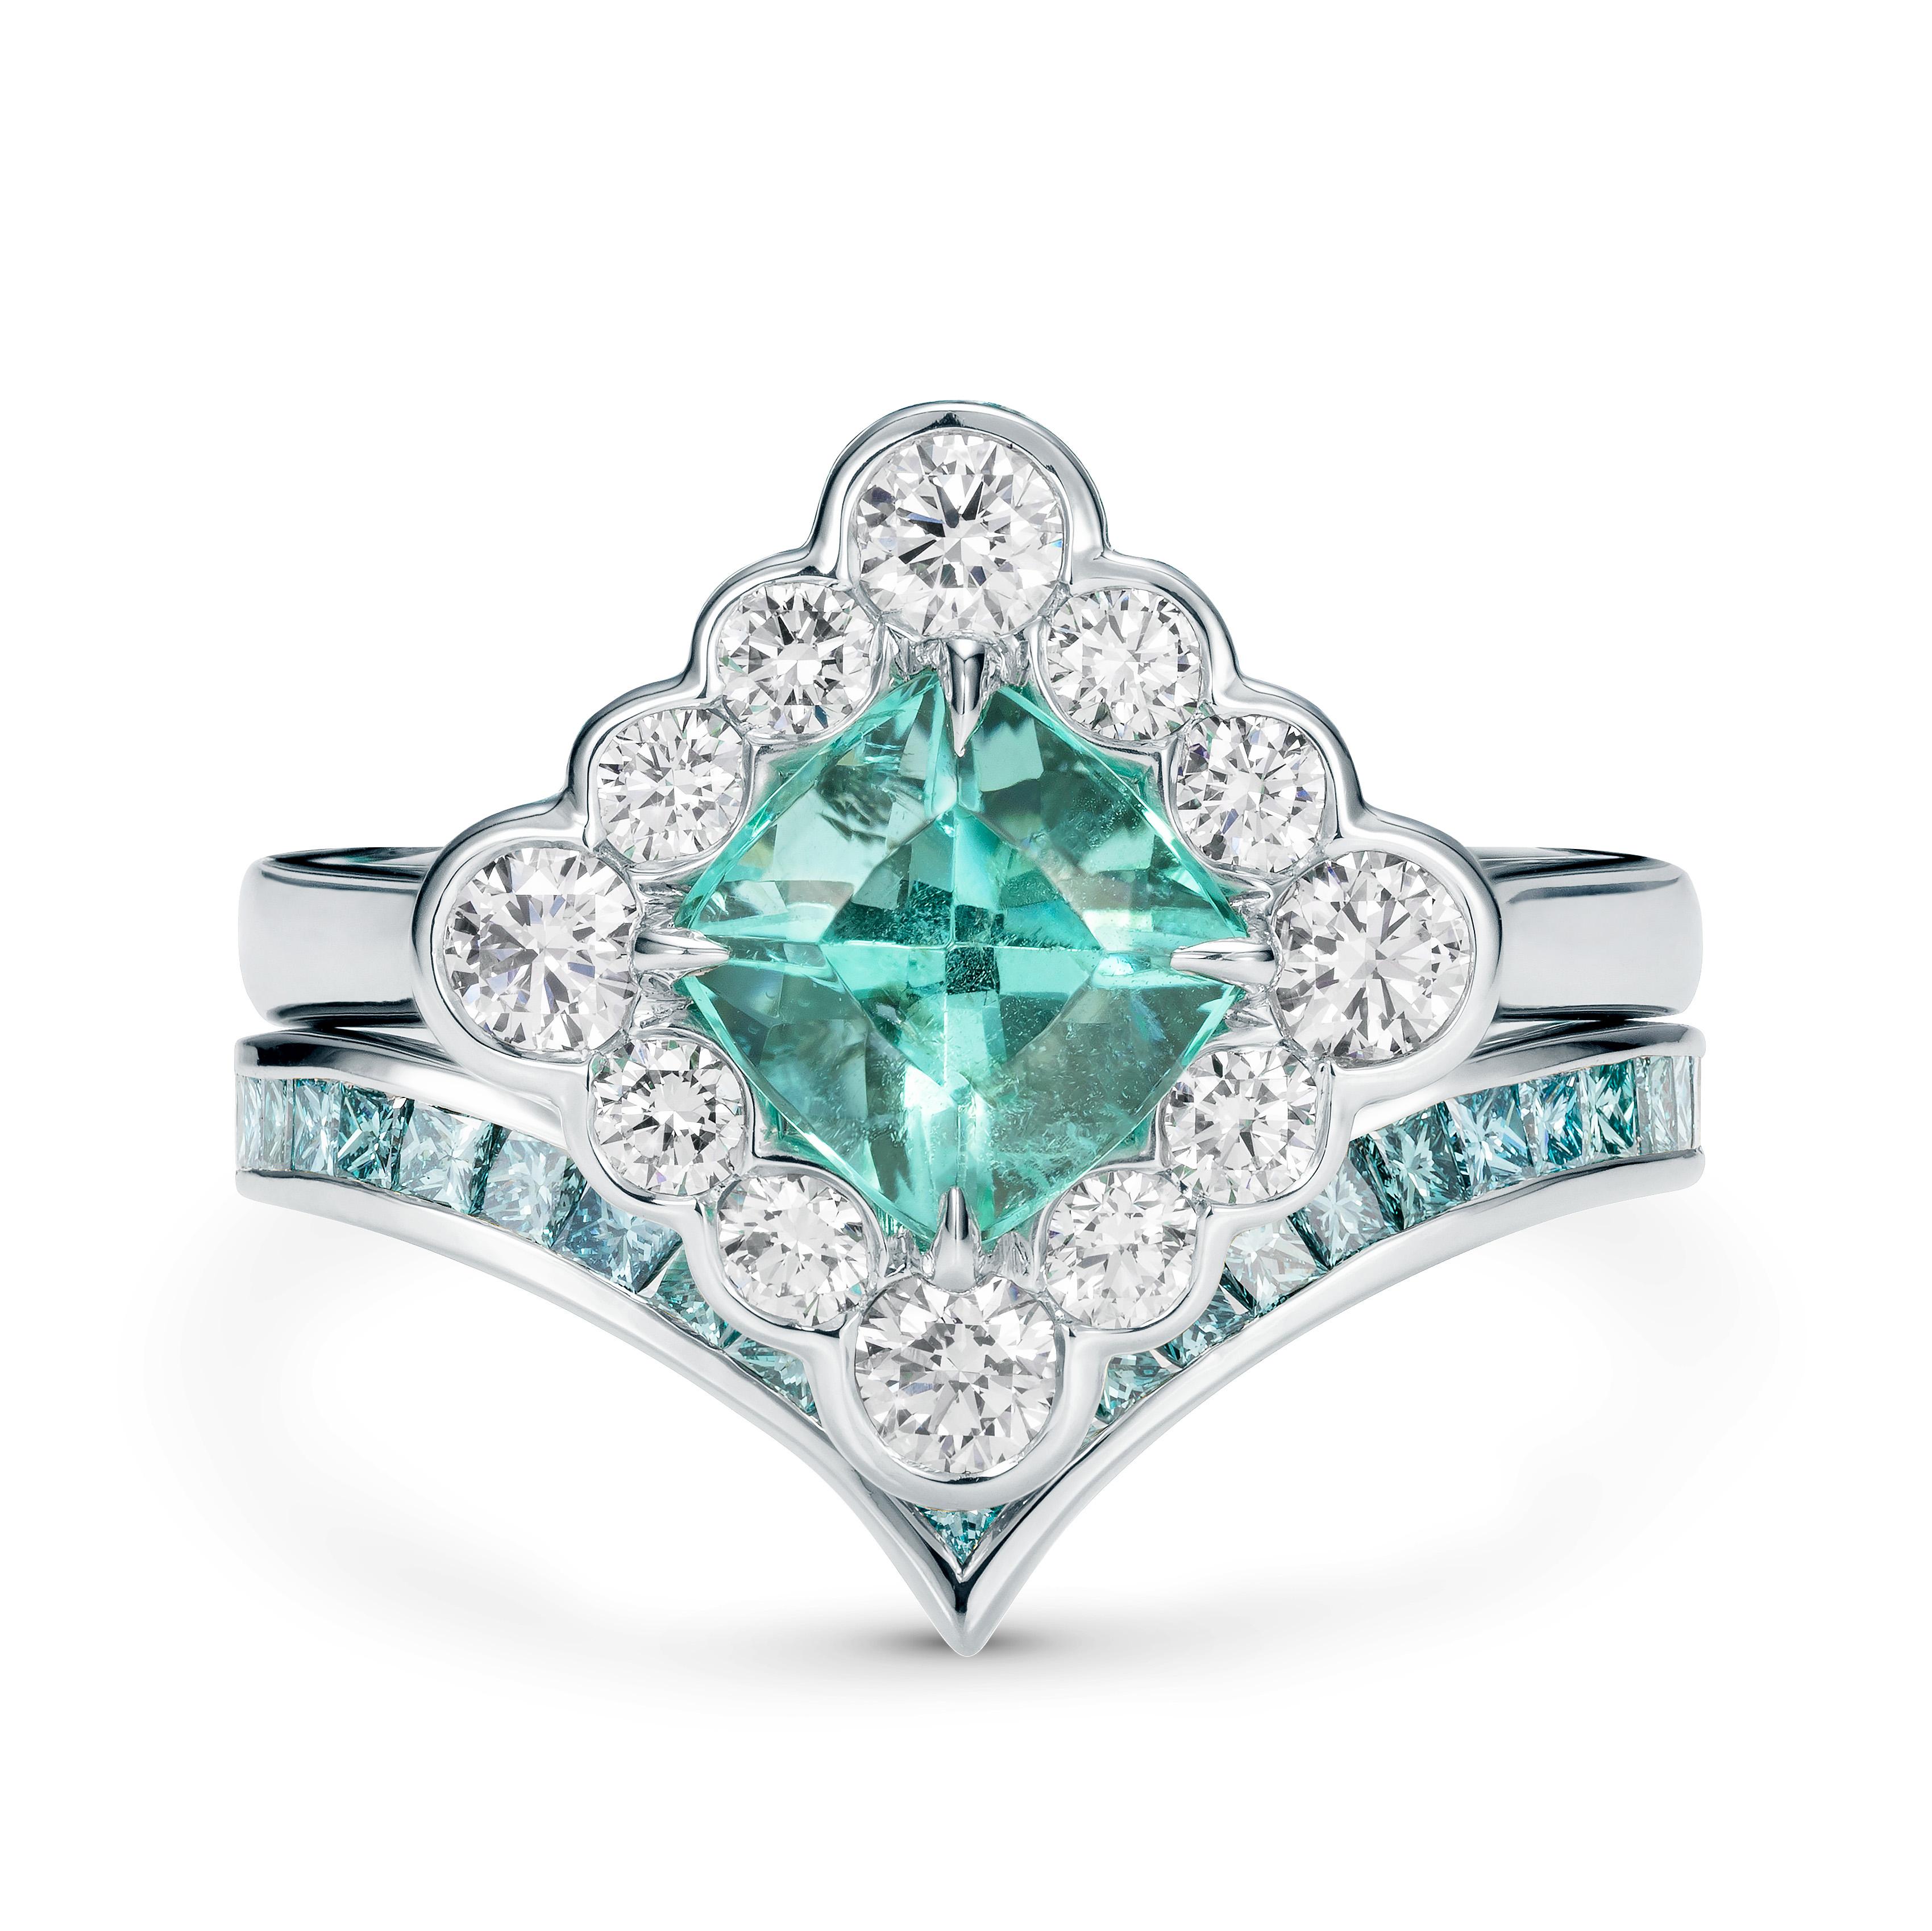 Contemporary Marcel Salloum V Shaped Sky Blue Princess Cut Diamond Ring For Sale